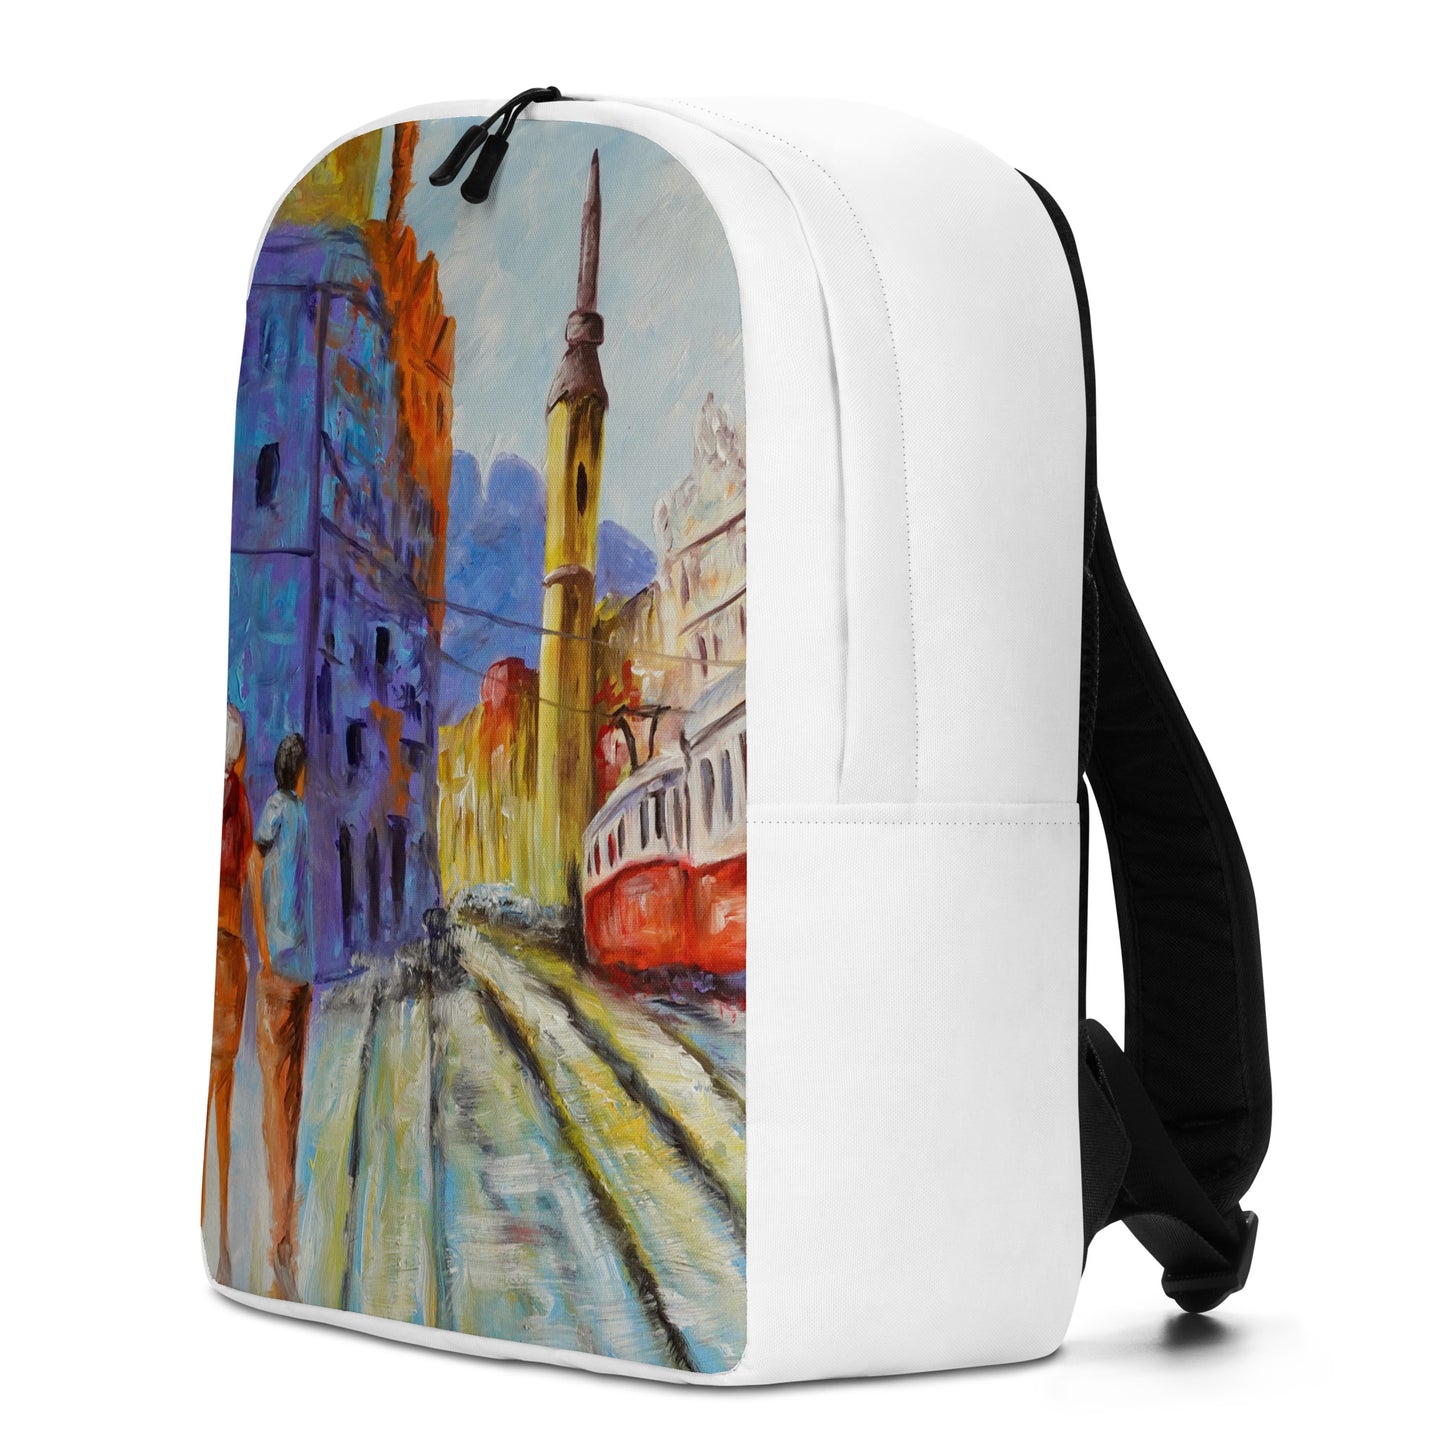 Backpack "Lisbon Tram" Ideal for Laptop Secret Pocket Travel Art